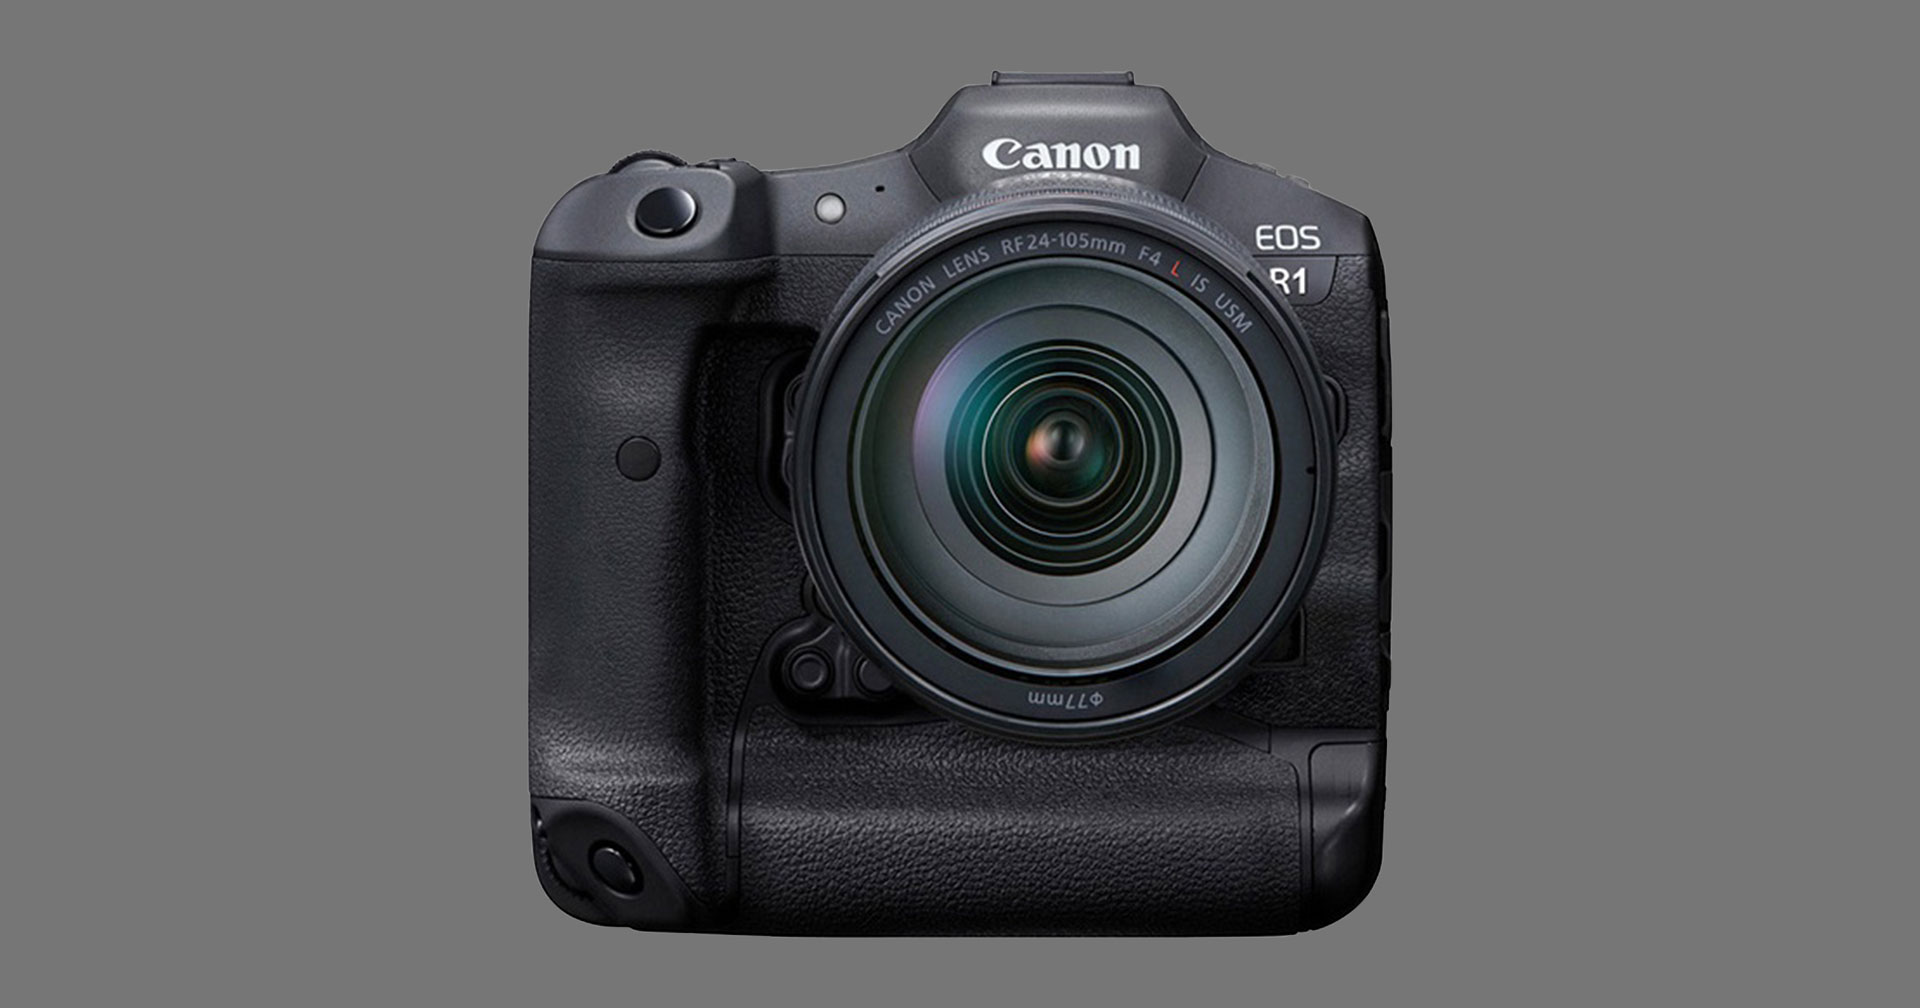 ลือ Canon เตรียมประกาศพัฒนากล้อง EOS R1, EOS R5S และ EOS R7 ในงาน CP+ 2021 สิ้นเดือนนี้!